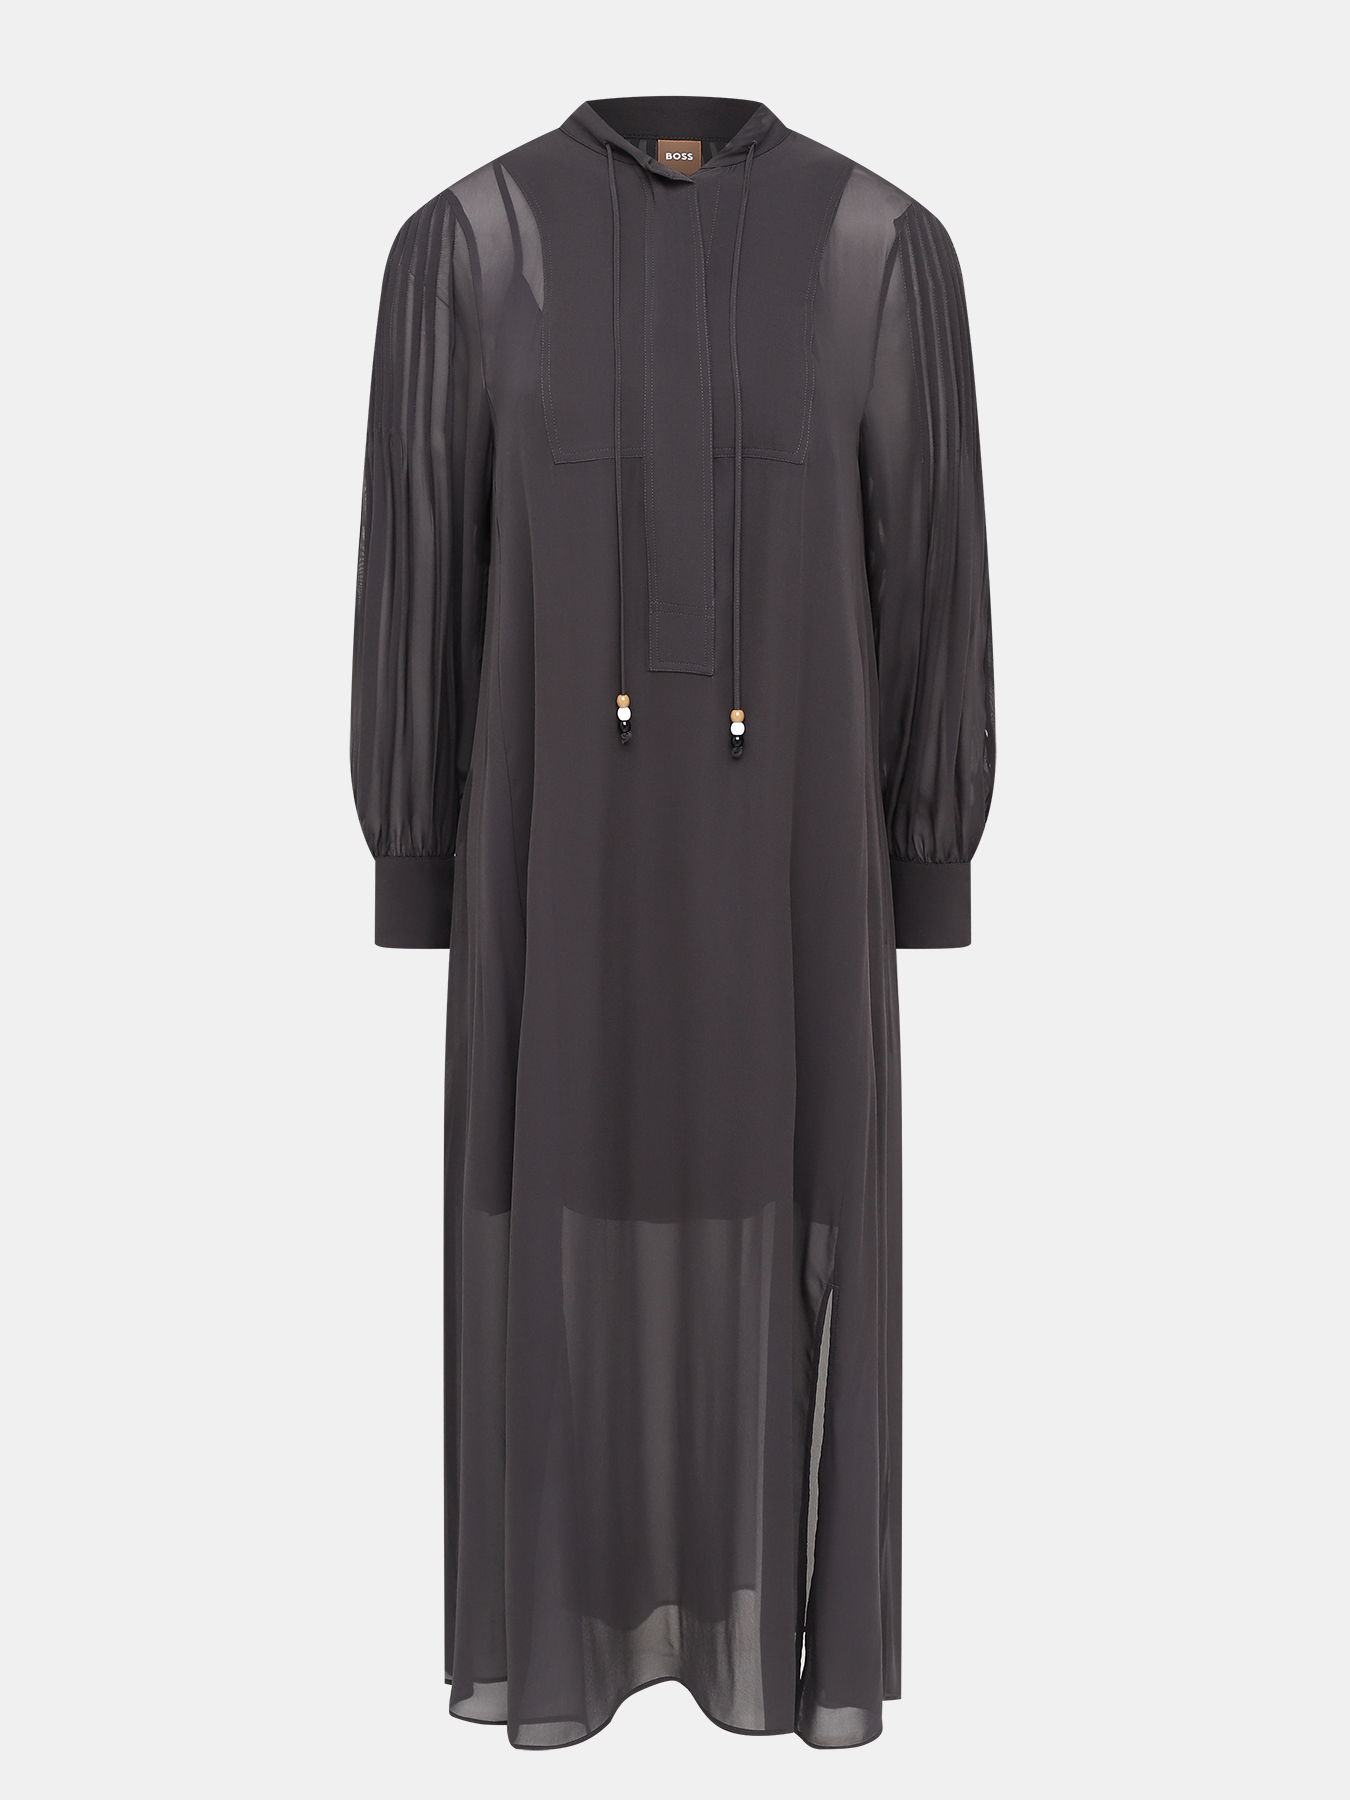 Платье Dahama BOSS 424704-016, цвет темно-серый, размер 40